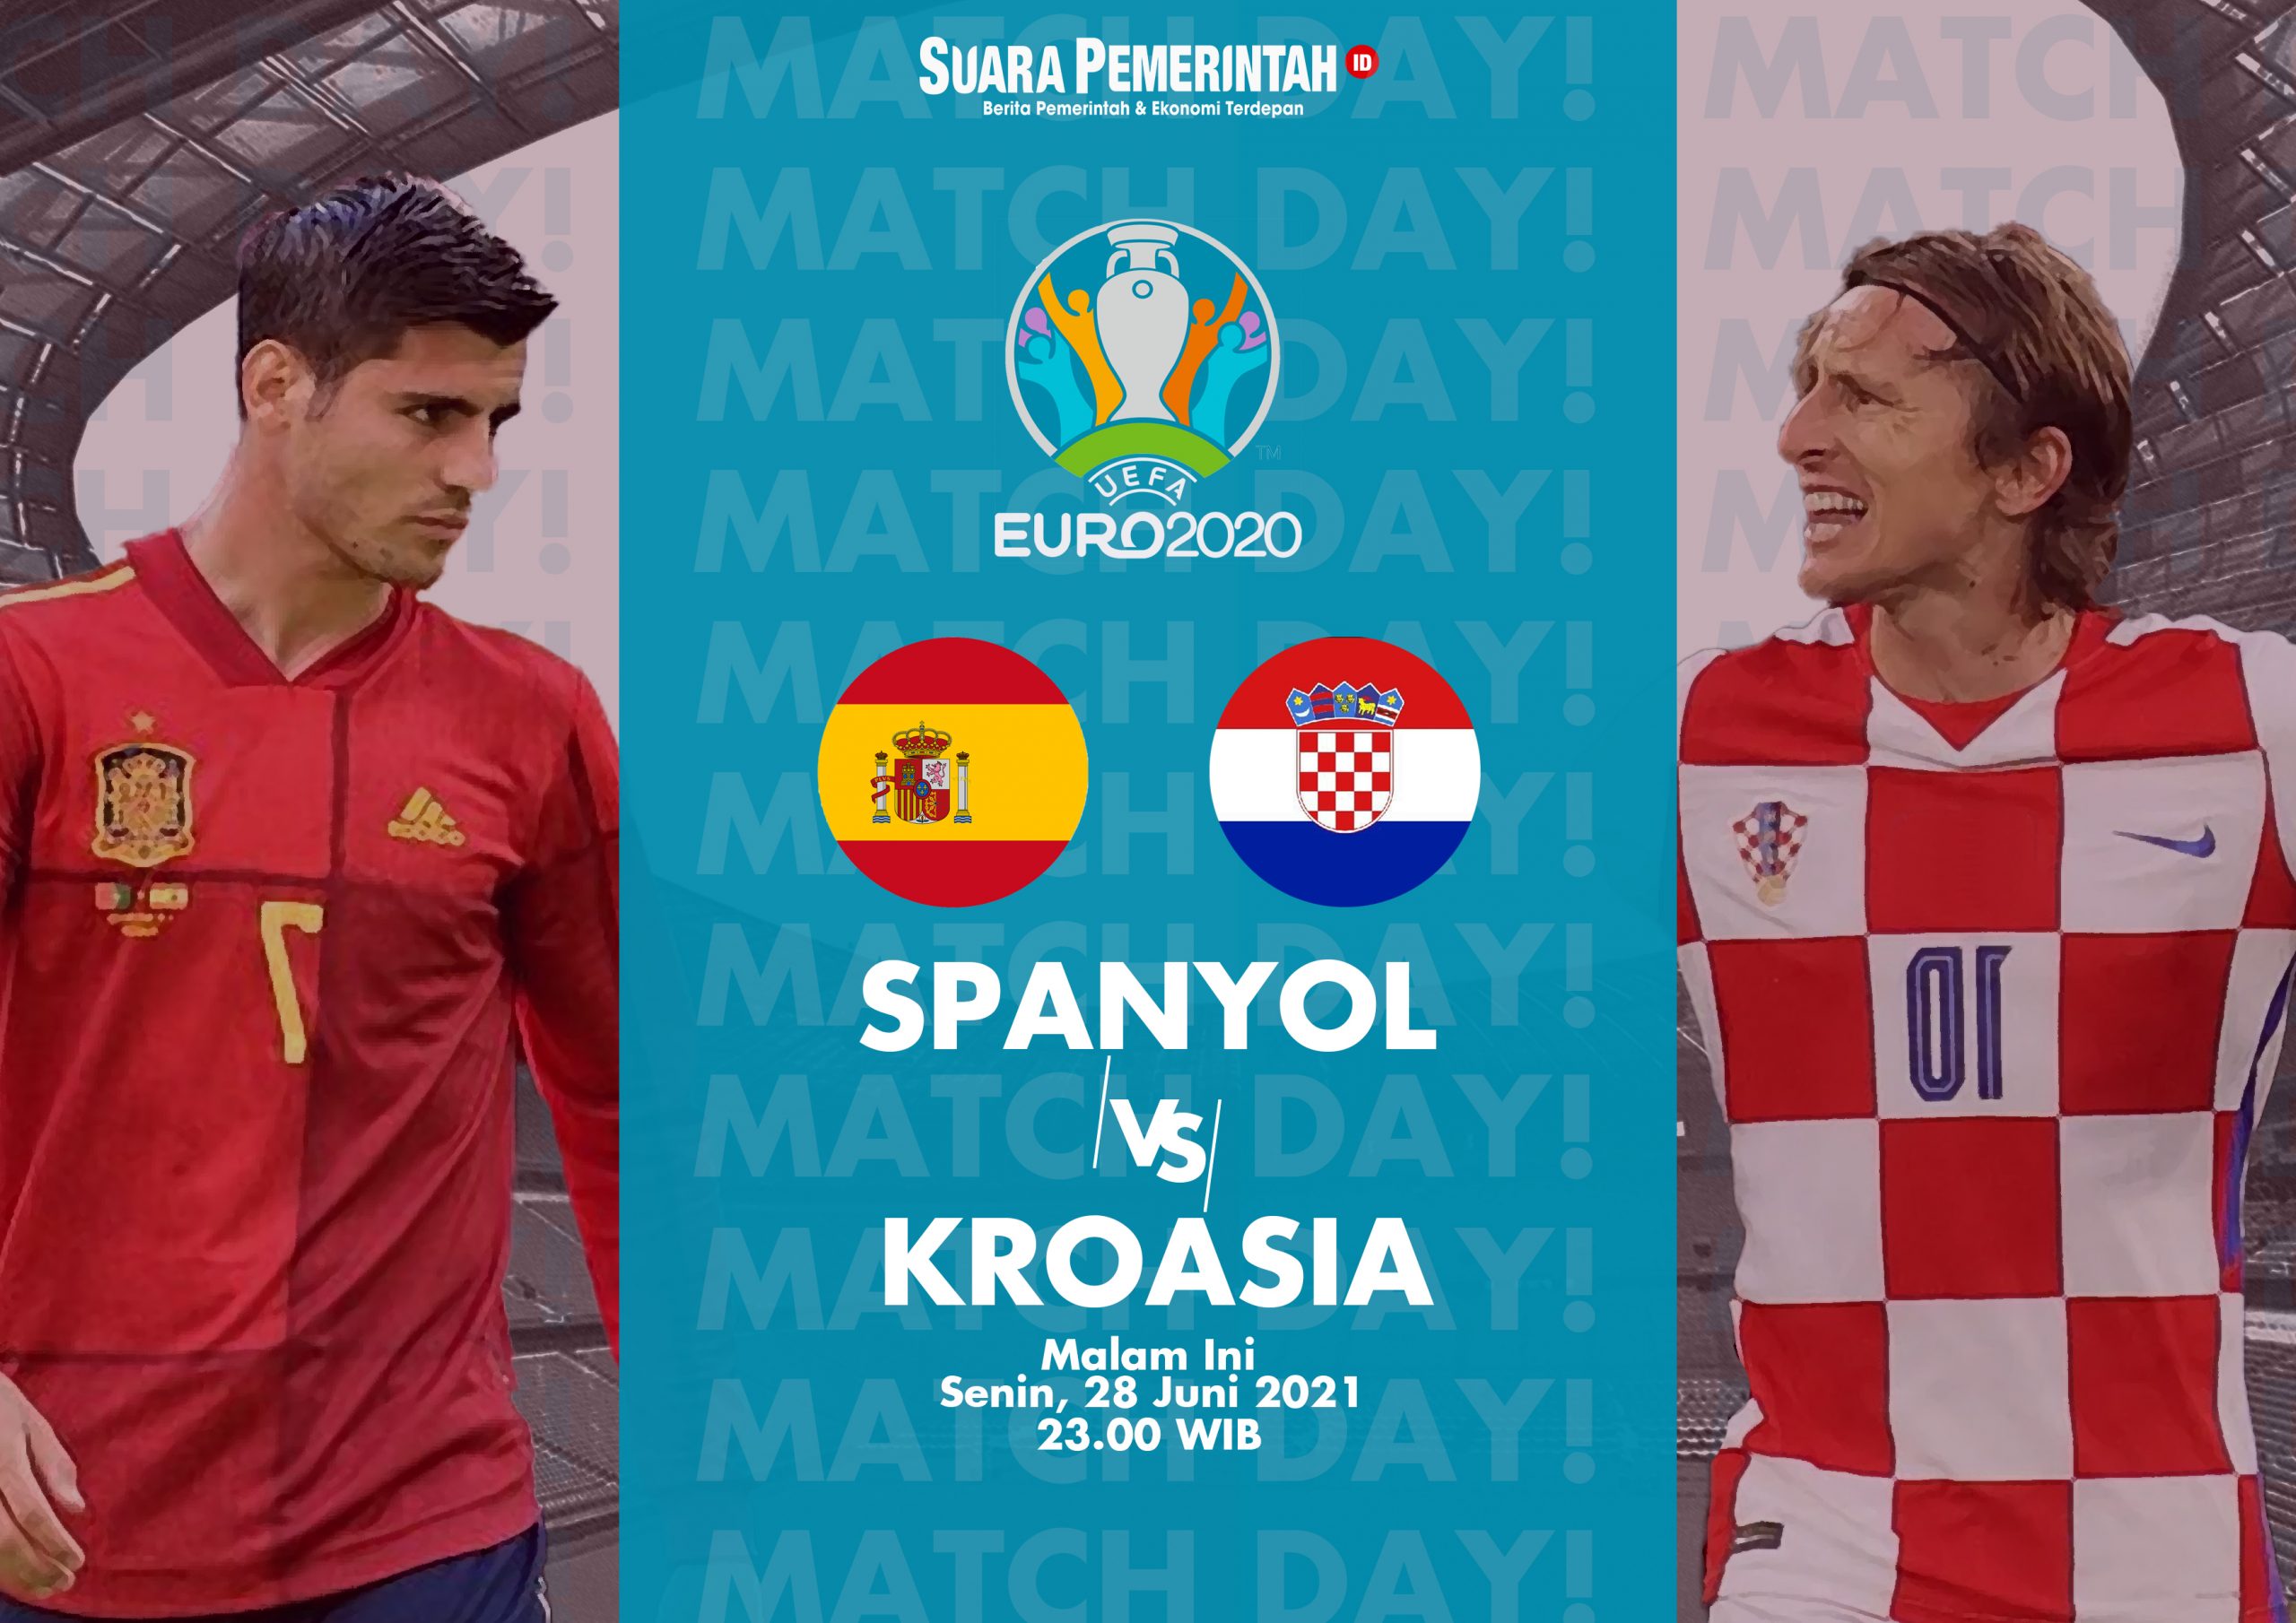 Prediksi skor kroasia vs spanyol piala eropa